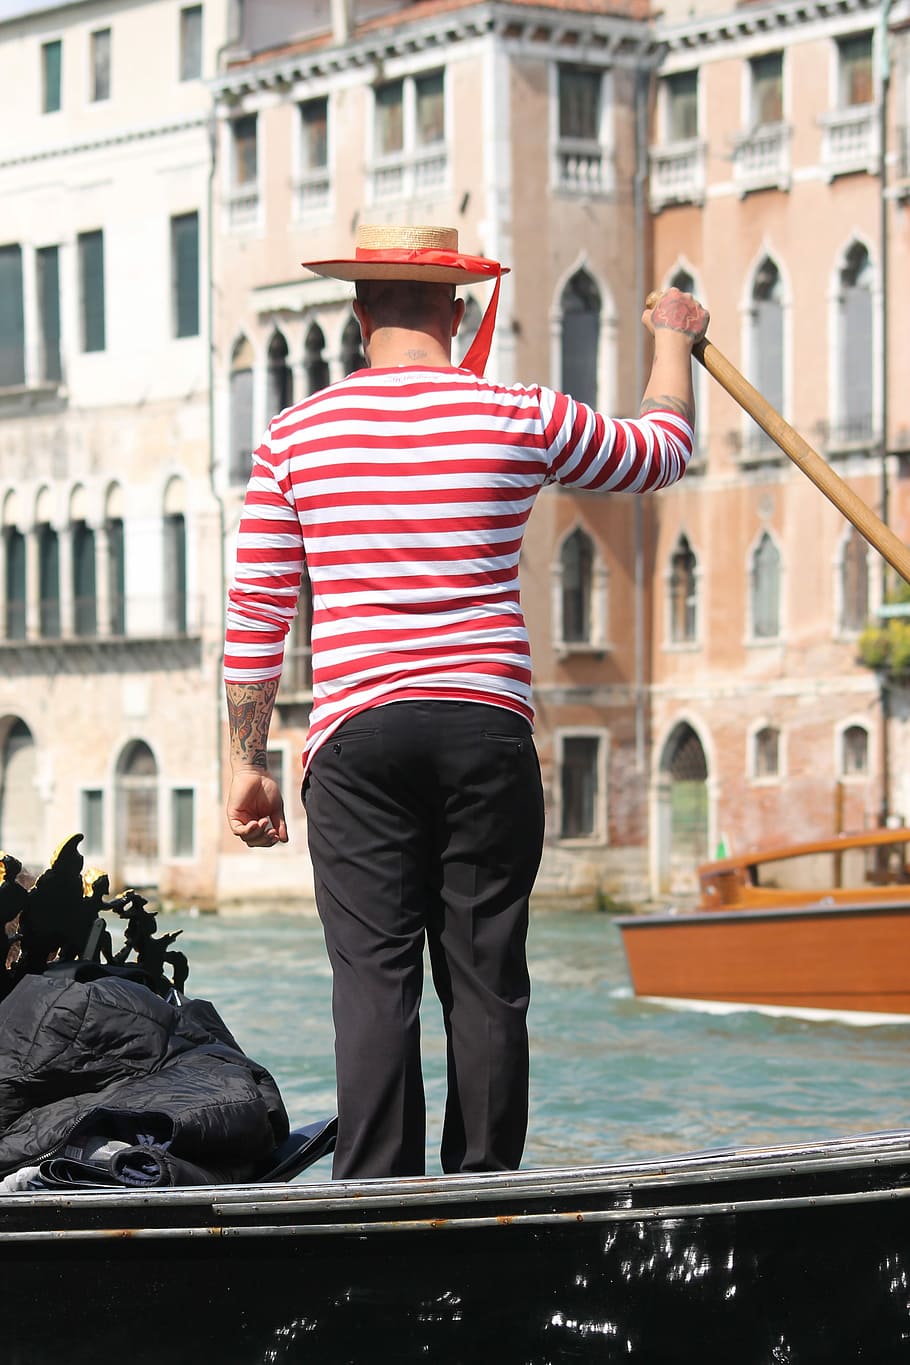 Venice, Gondolier, Gondola, Italian, italy, travel, city, tourism, boat, canal